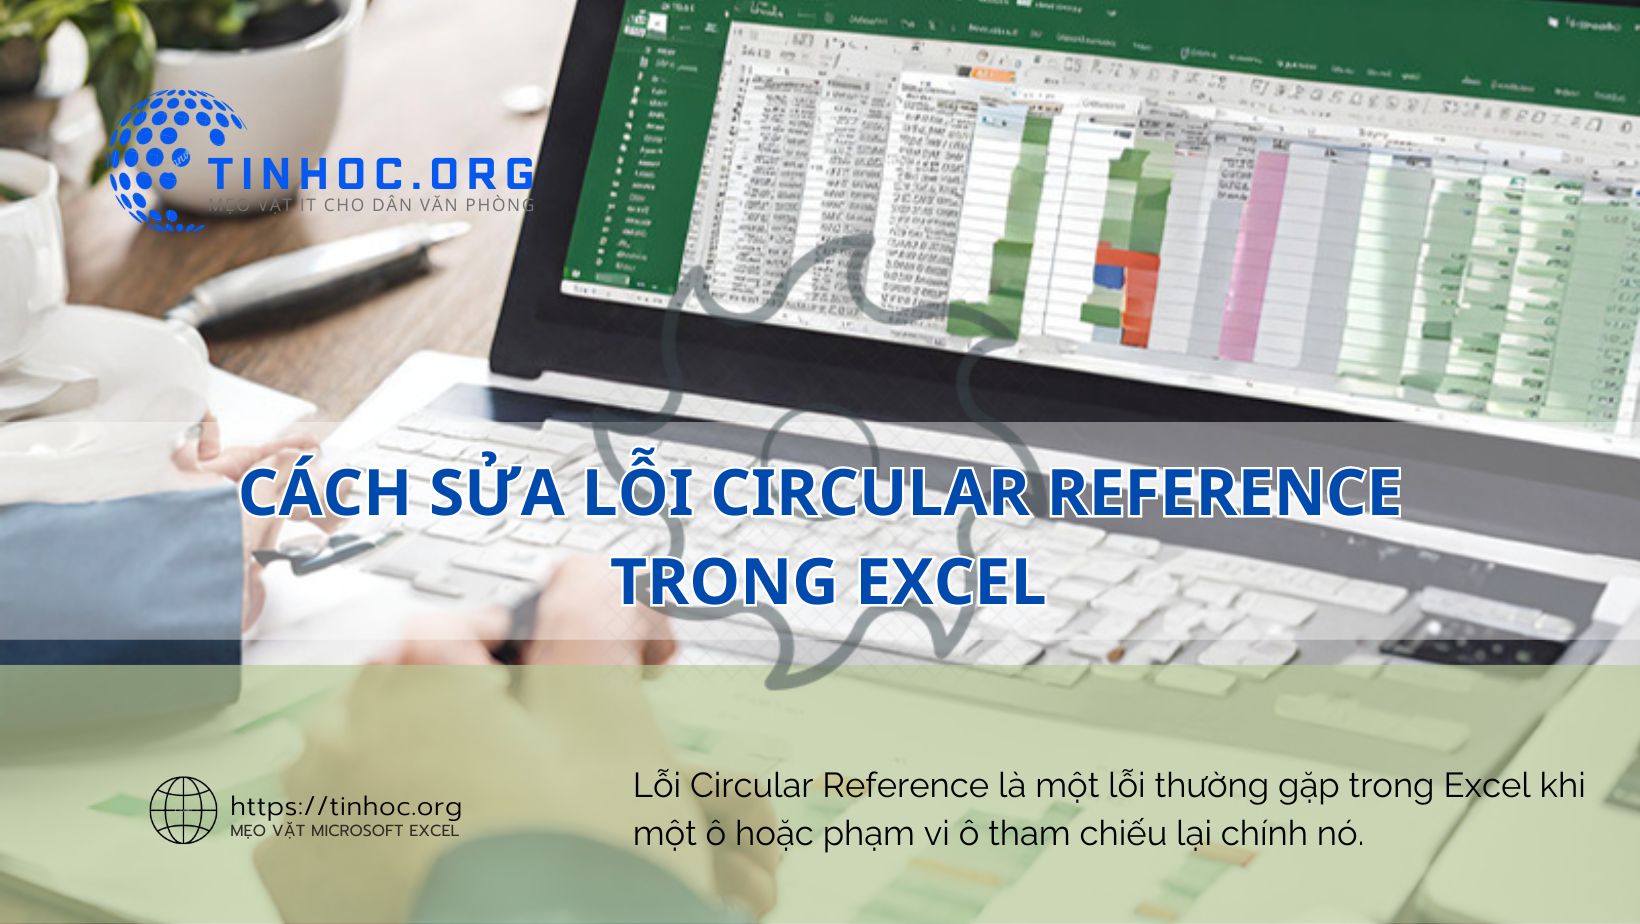 Lỗi Circular Reference là một lỗi thường gặp trong Excel khi một ô hoặc phạm vi ô tham chiếu lại chính nó.